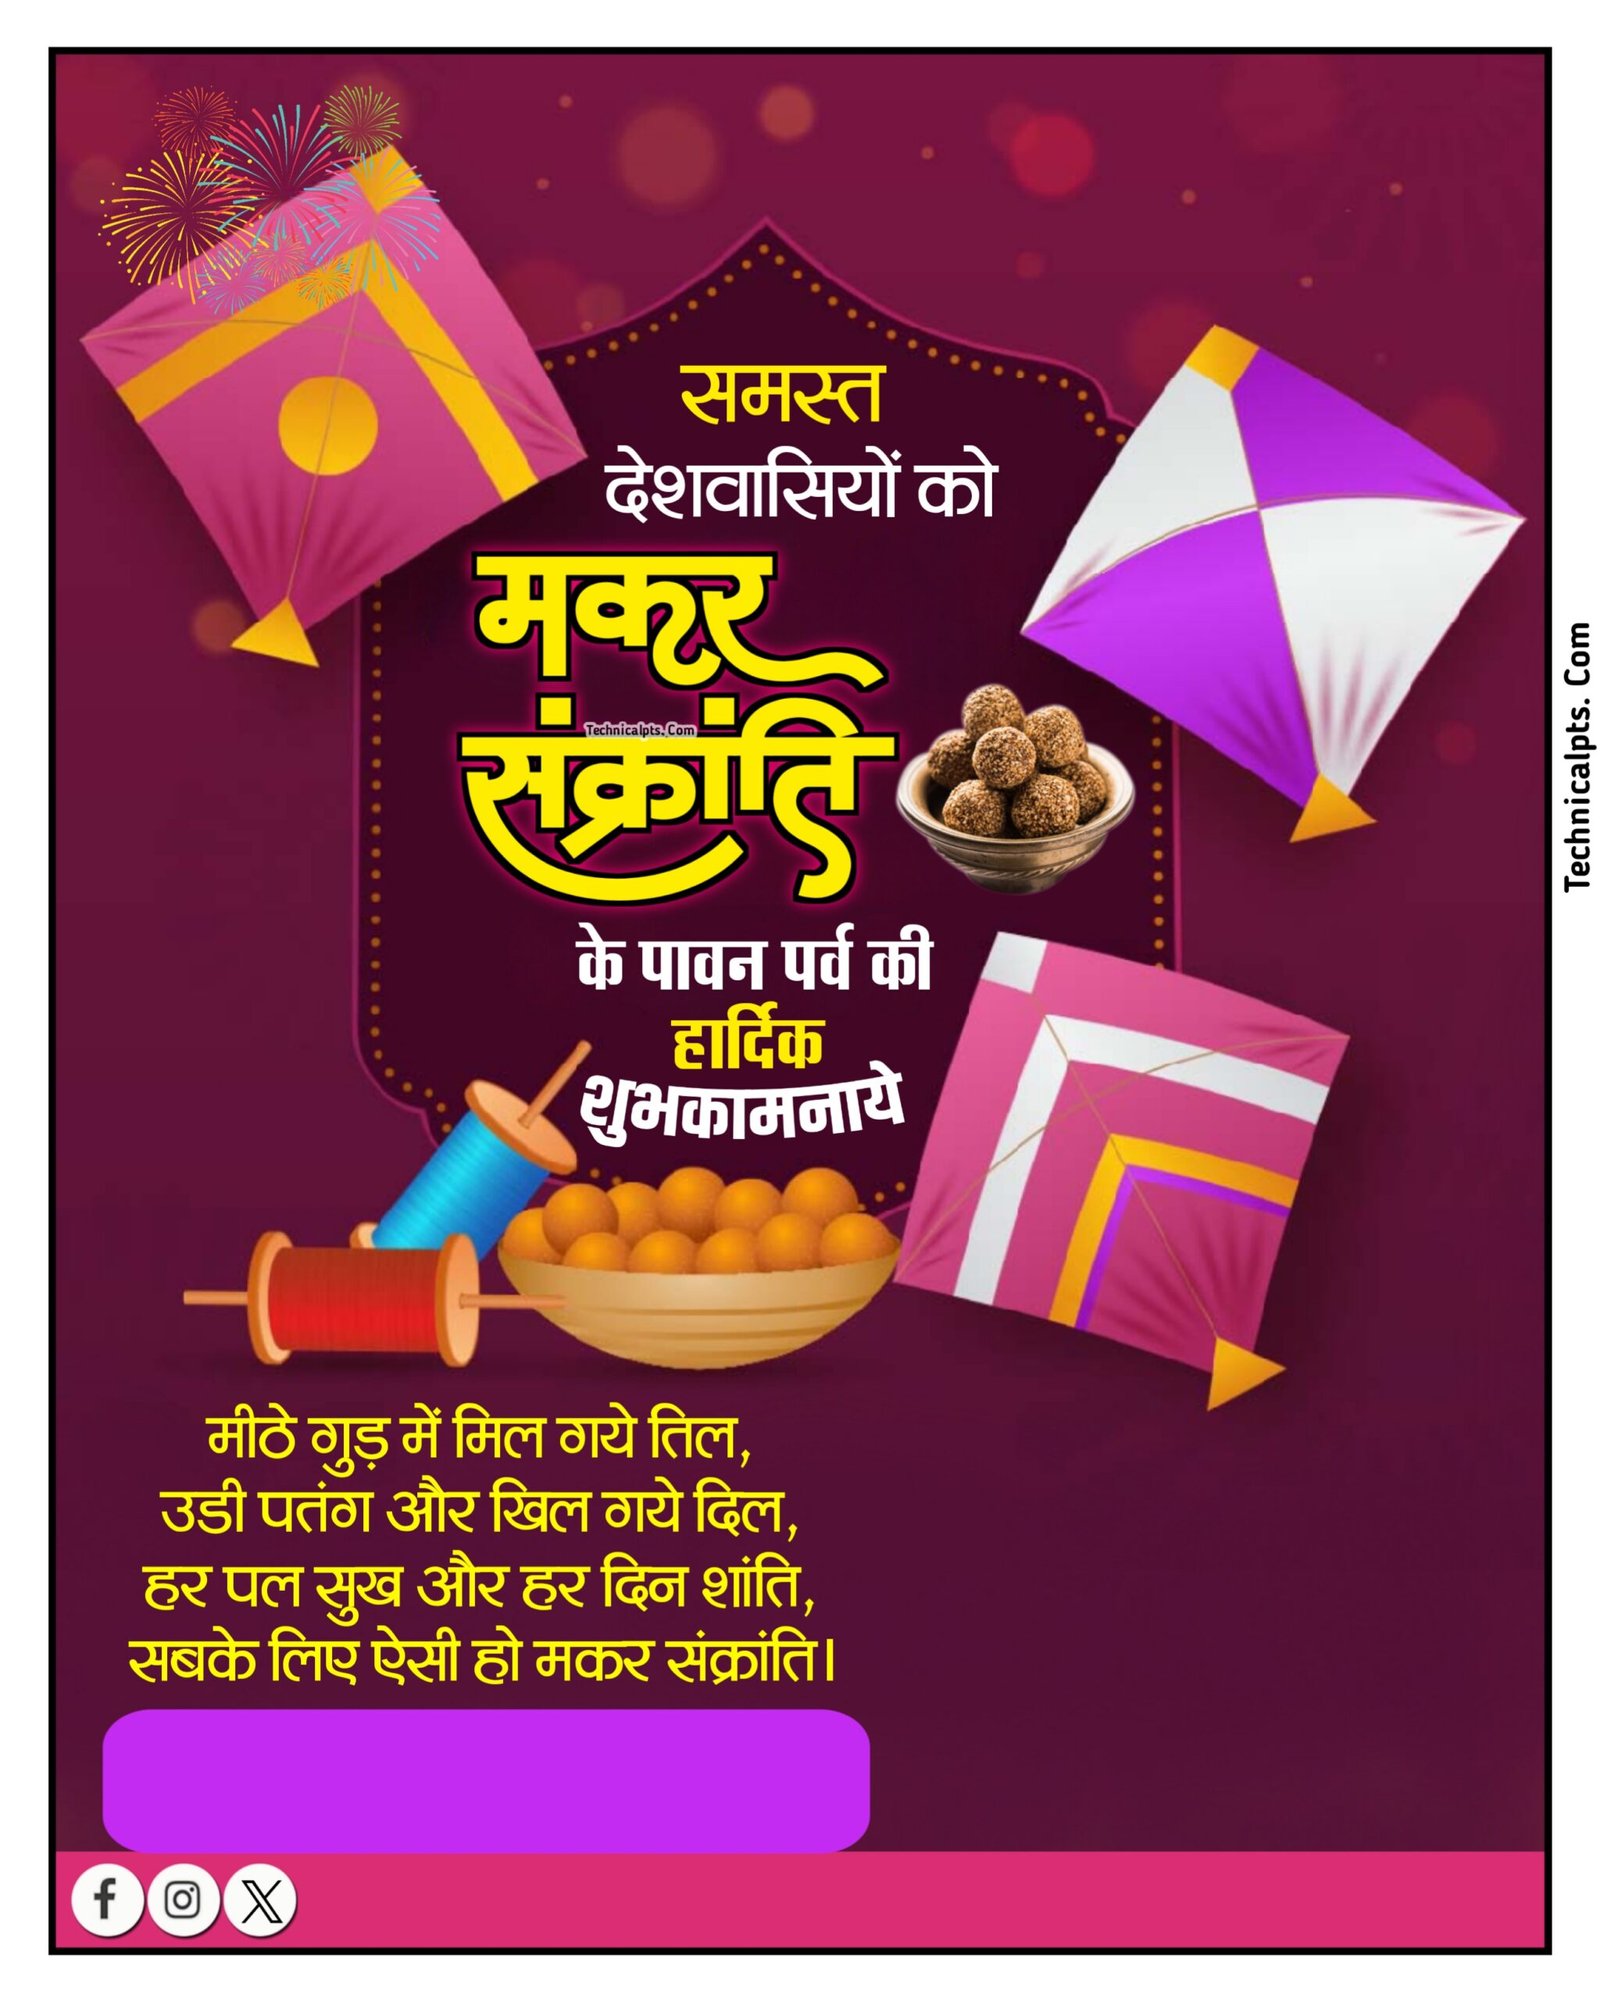 Mobile se Makar Sankranti ka poster banana sikhe | Makar Sakranti poster background images download| Makar Sakranti PNG images